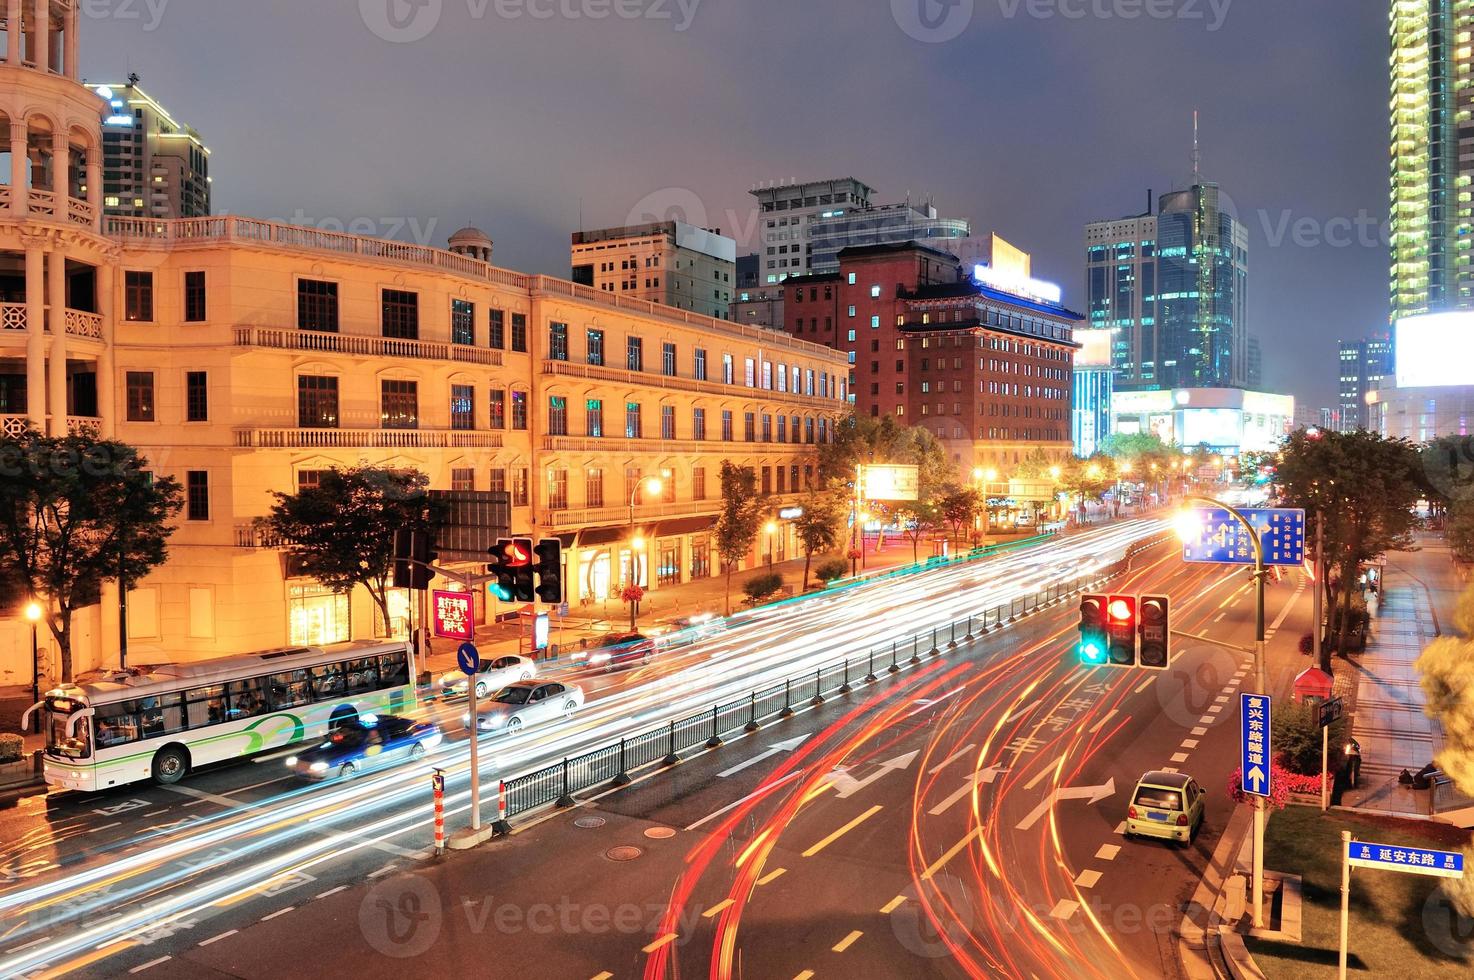 Shanghai street view photo